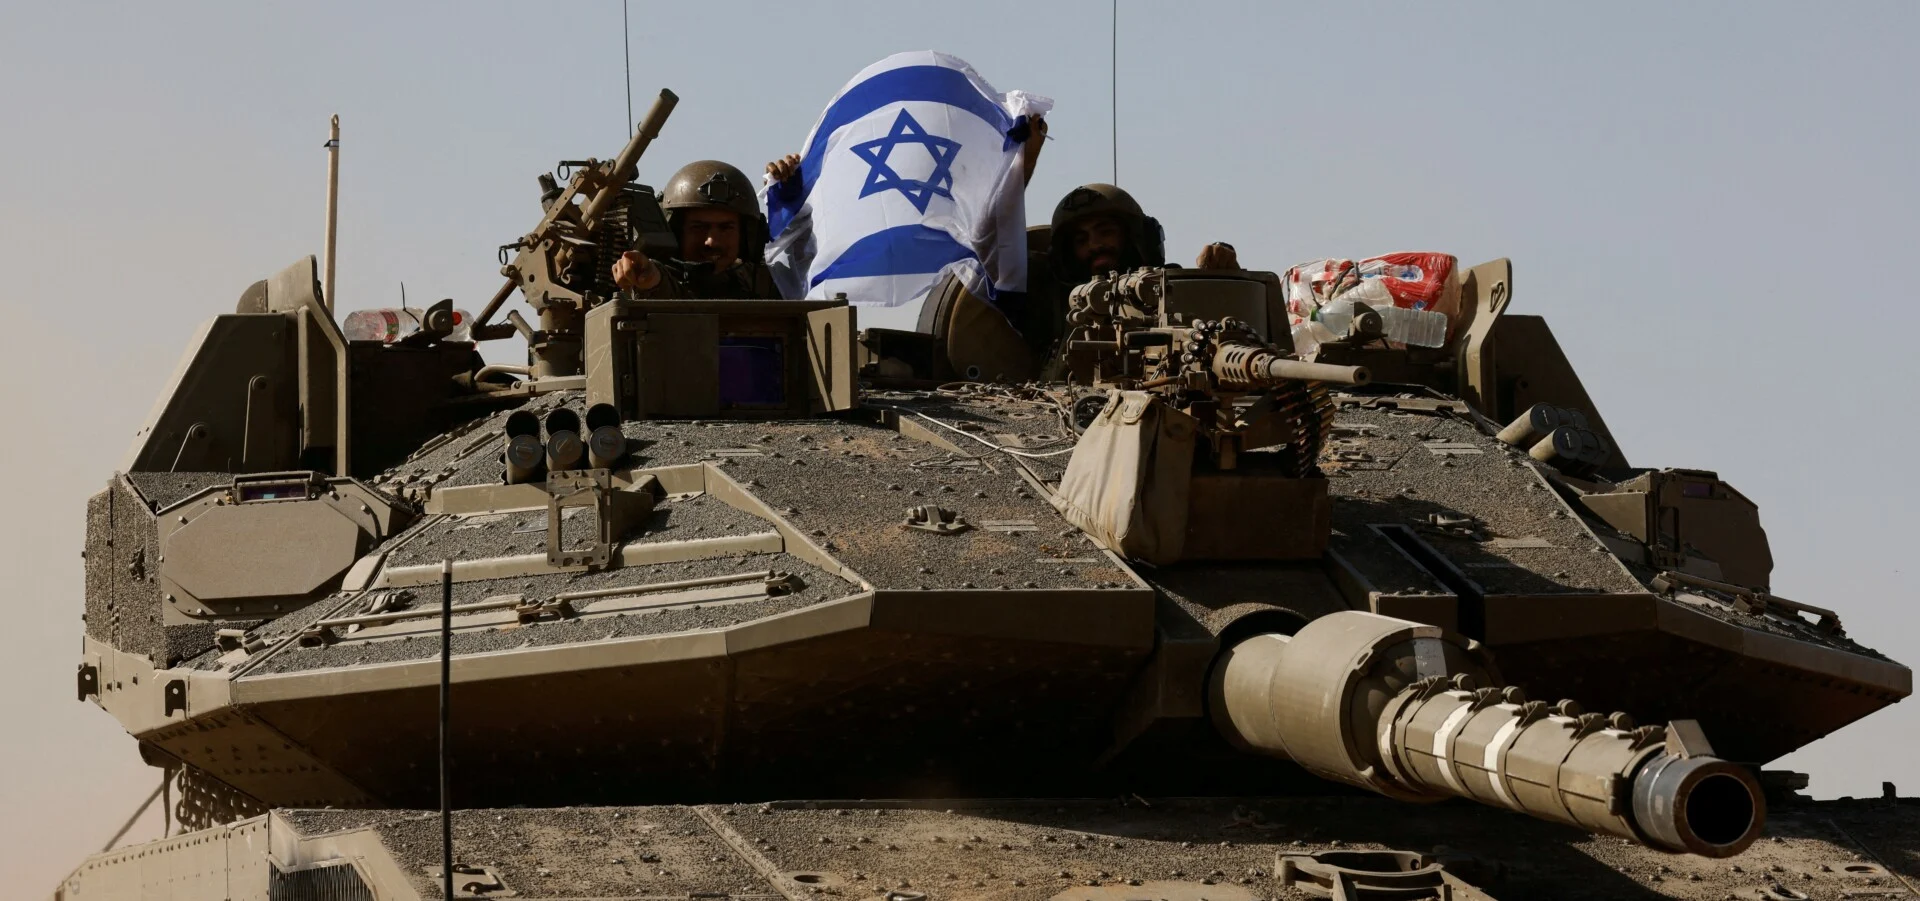 Ισραήλ: Ενισχύονται τα μέτρα άμυνας απέναντι στο Ιράν- «Γνωρίζουμε πώς να υπερασπιστούμε τους εαυτούς μας», λέει ο Νετανιάχου